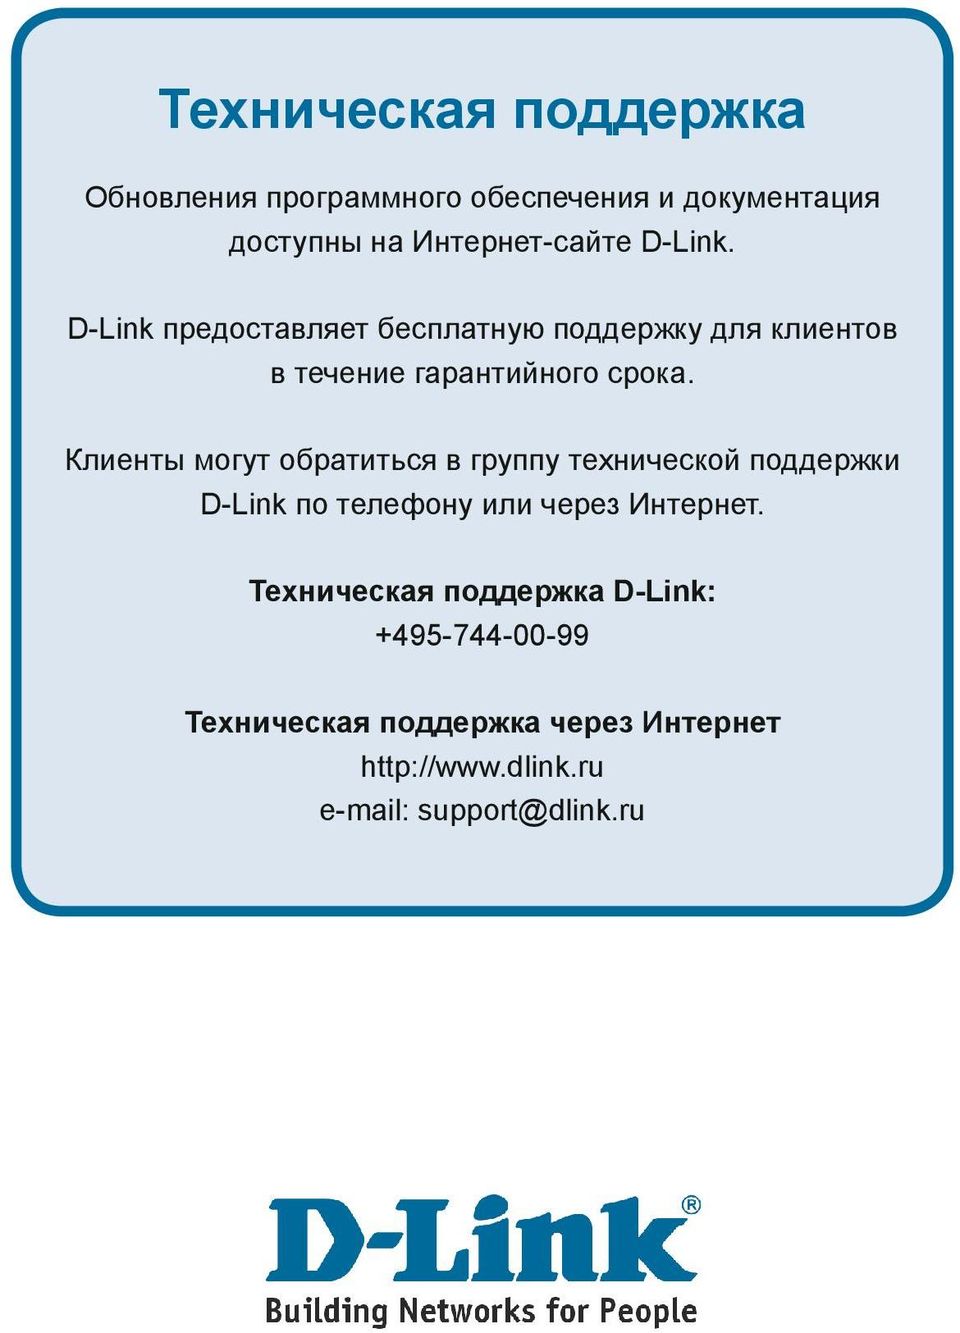 Клиенты могут обратиться в группу технической поддержки D-Link по телефону или через Интернет.